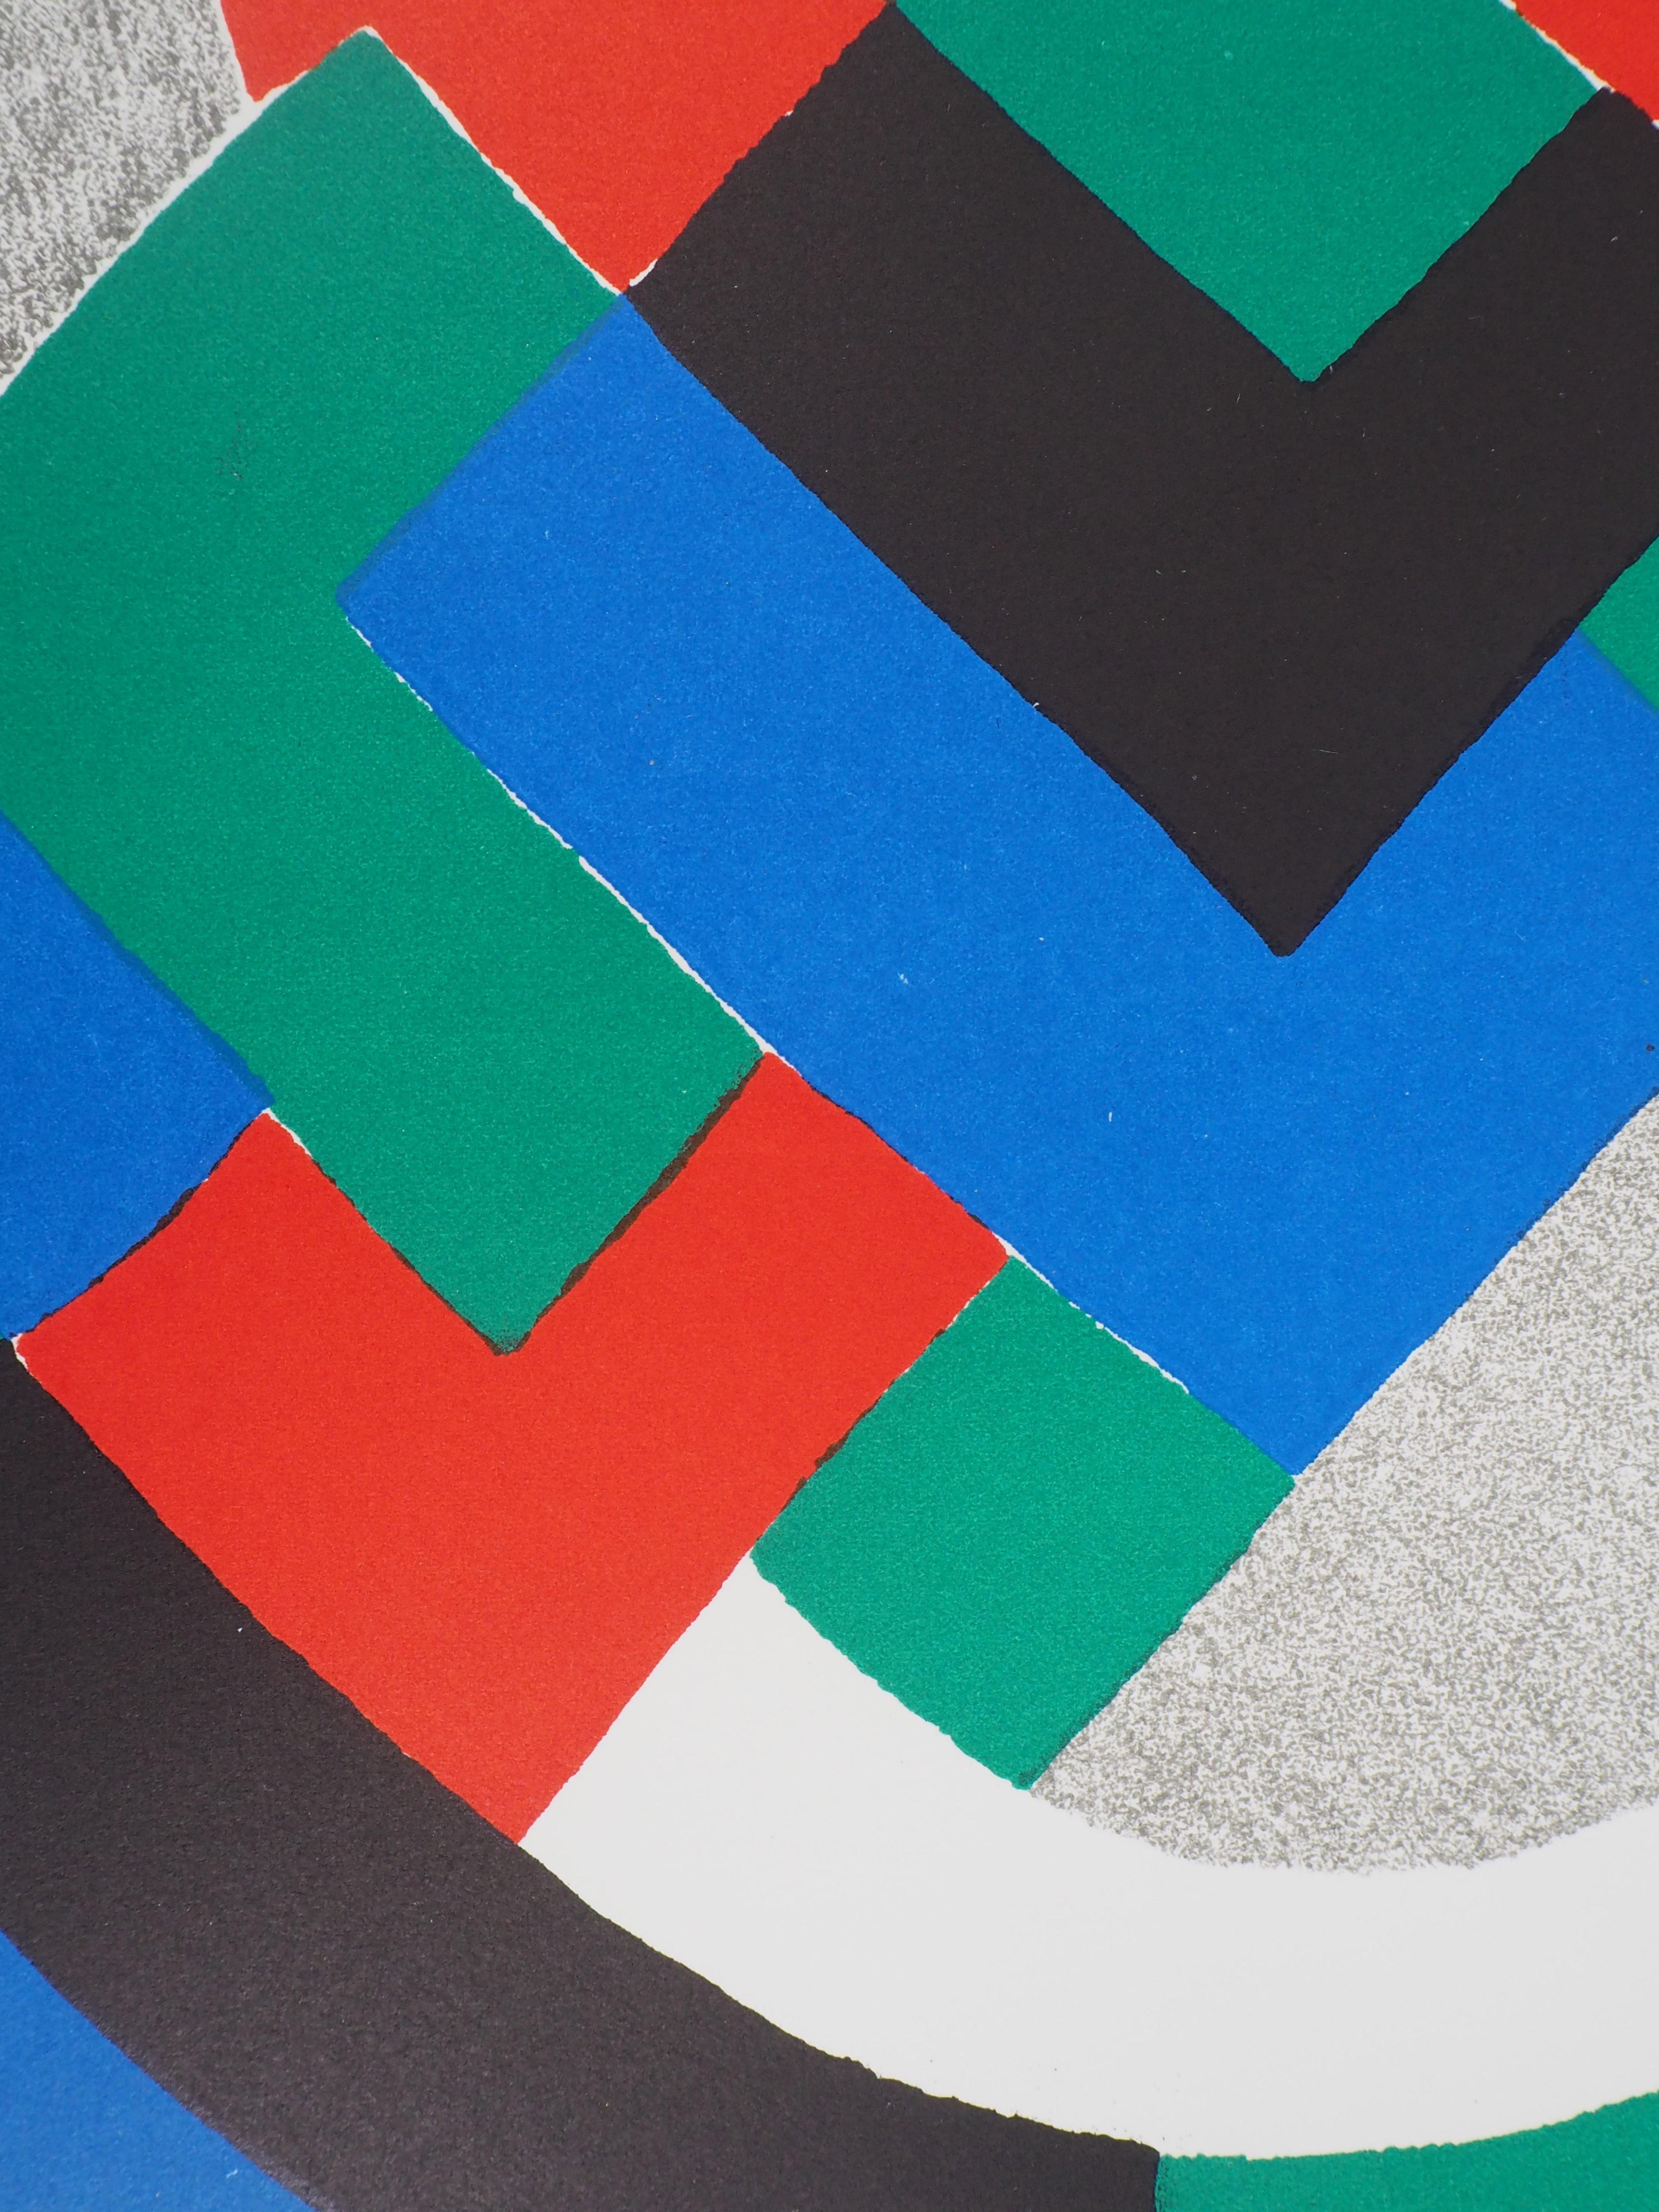 Composition en vert, bleu et rouge - Lithographie originale (Mourlot 1969) - Géométrique abstrait Print par Sonia Delaunay